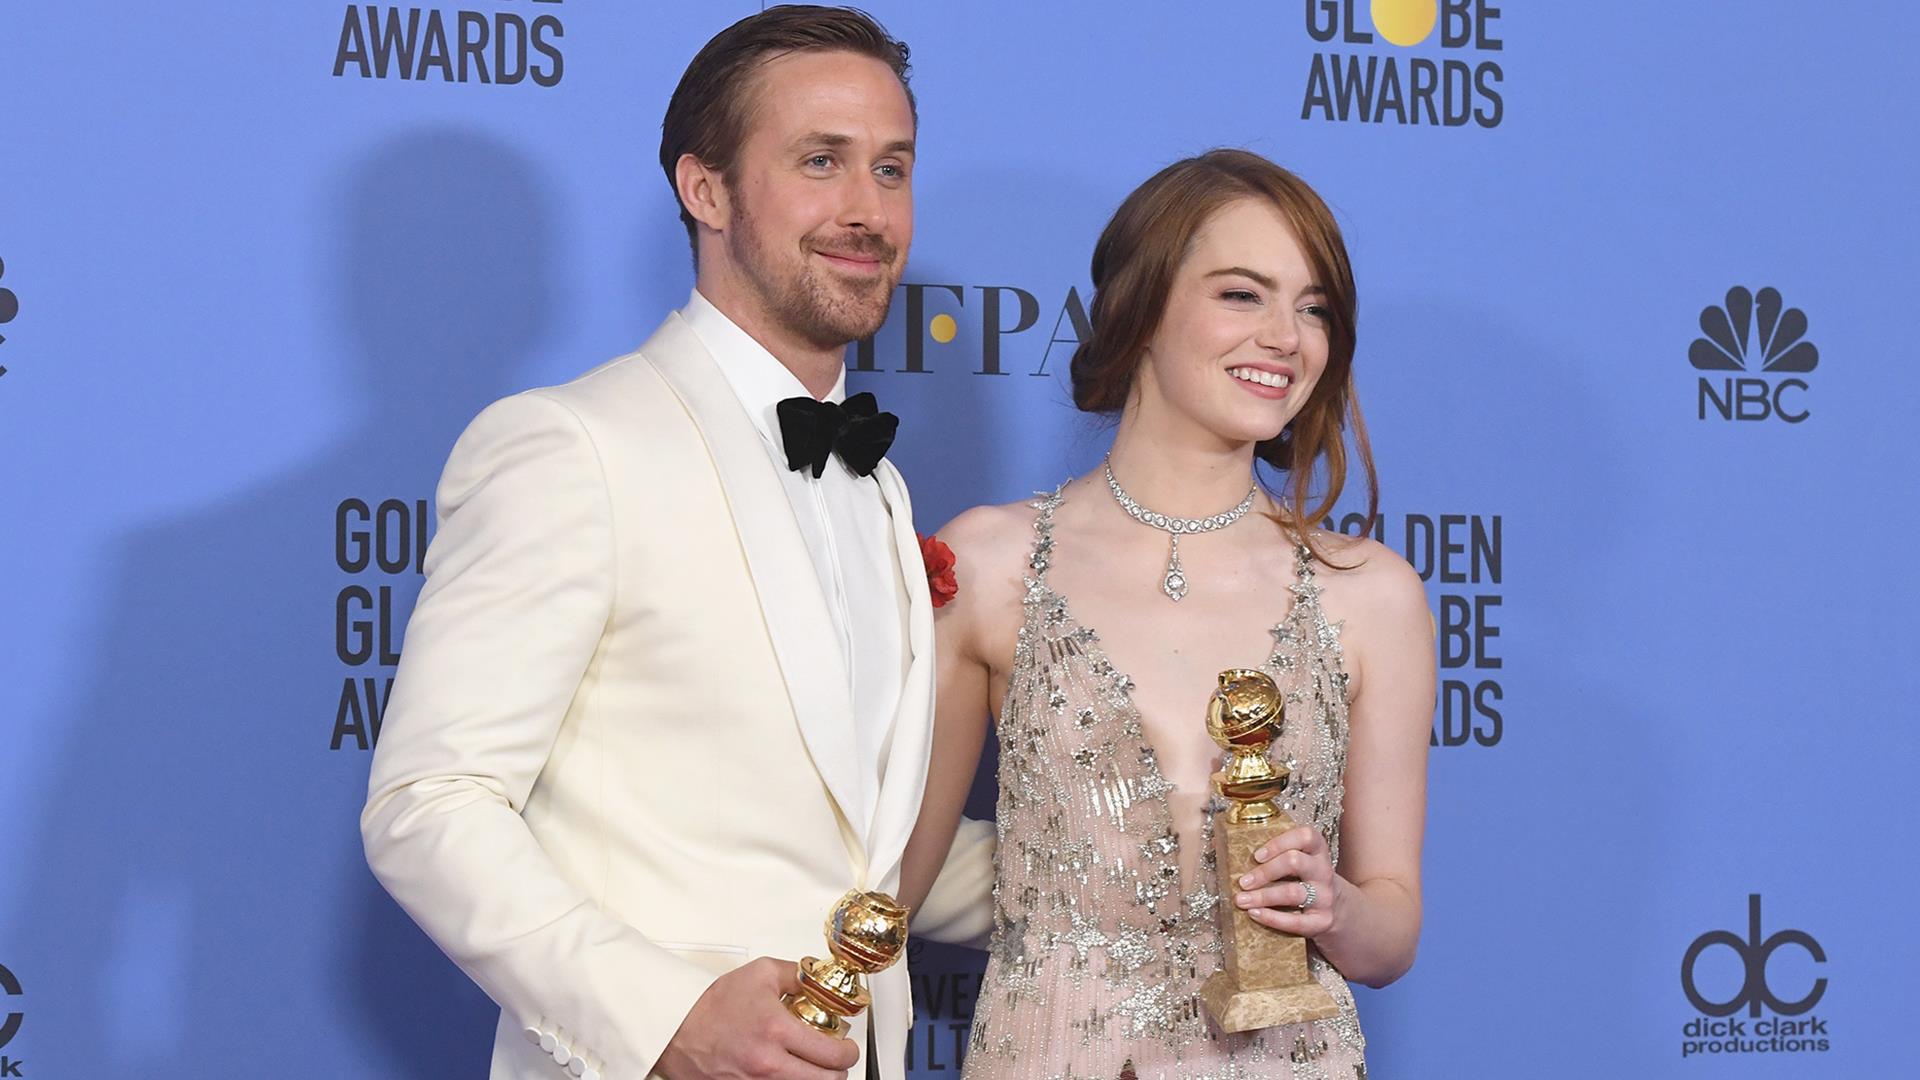 At Golden Globes, 'La La Land' has a landslide of wins with 7 awards